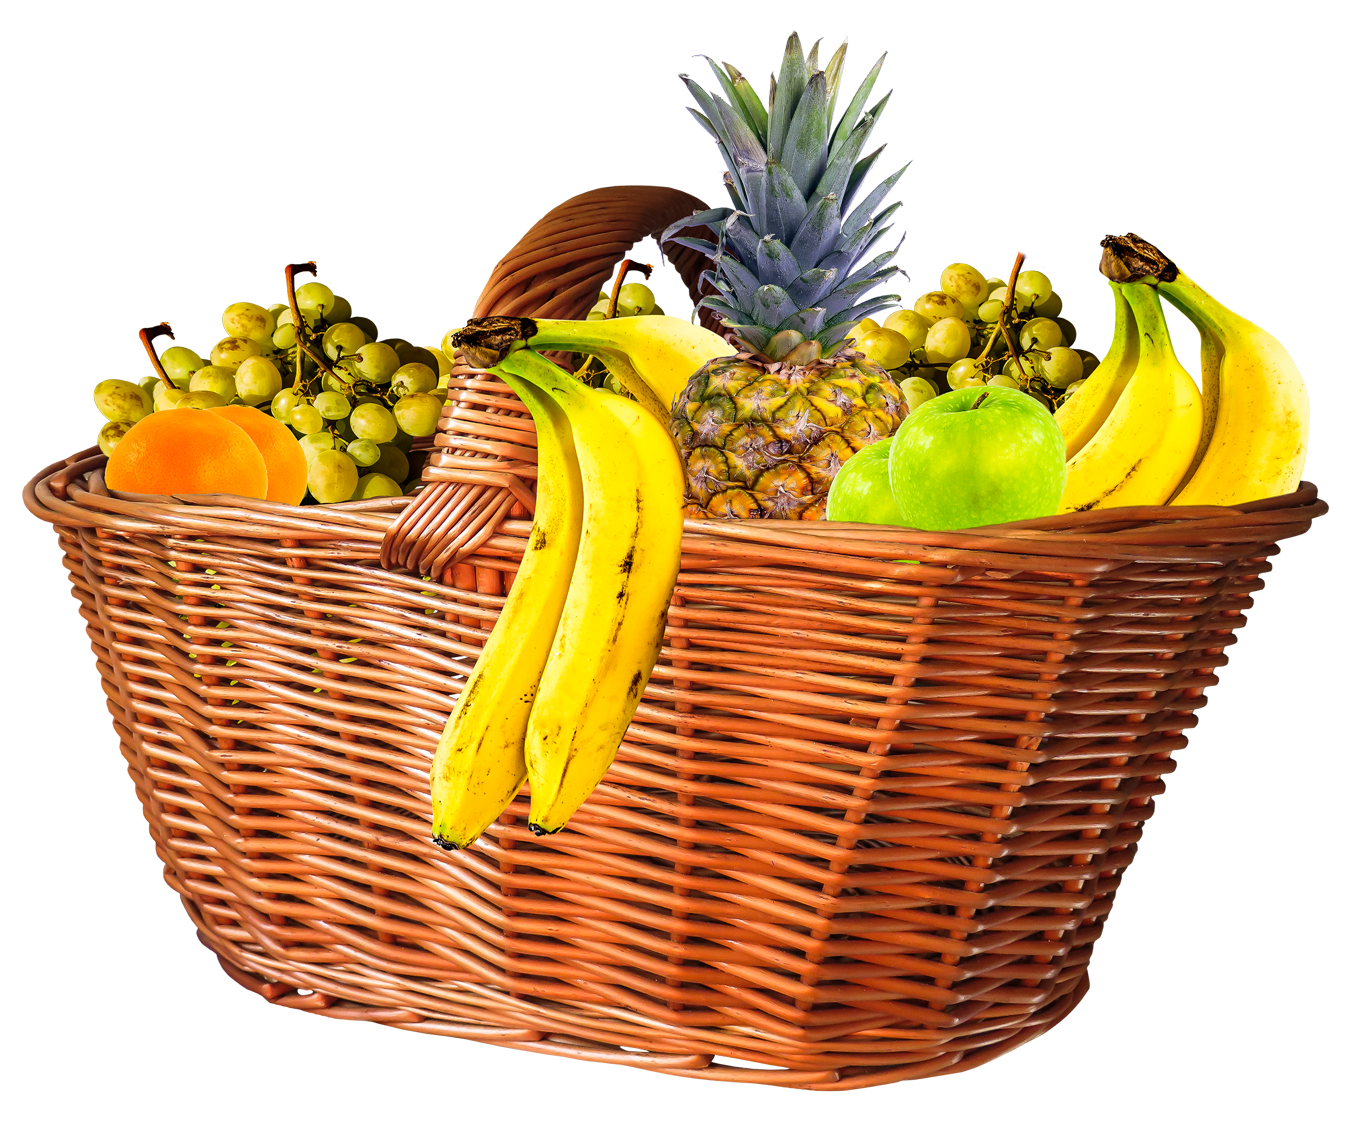 Basket Mix Fruits Free Download Image PNG Image